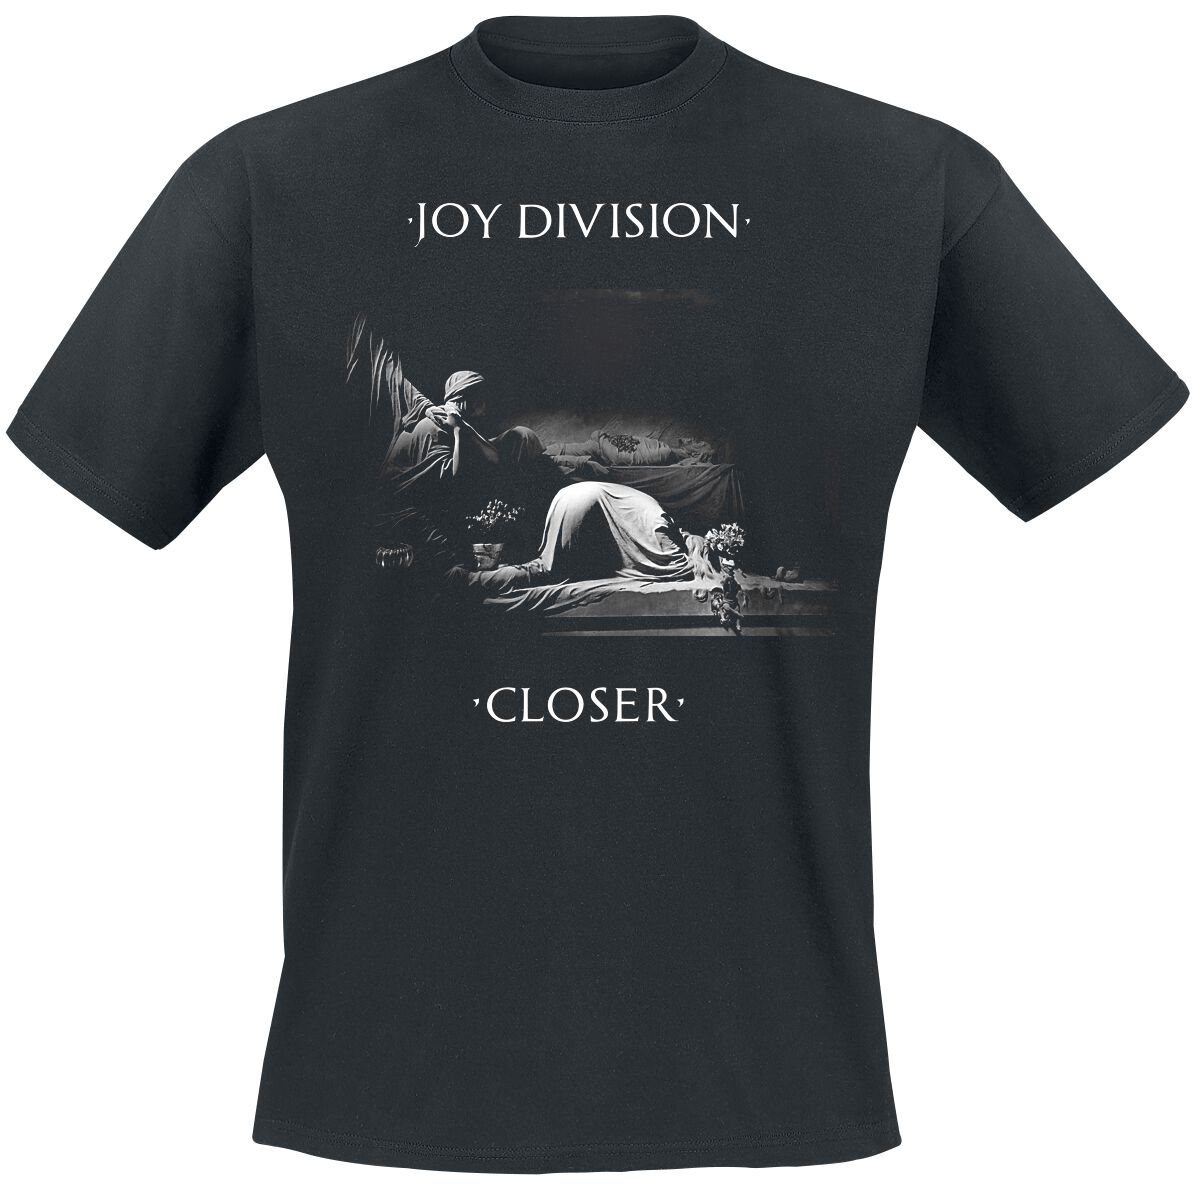 Joy Division T-Shirt - Classic Closer - S bis XXL - für Männer - Größe L - schwarz  - Lizenziertes Merchandise!